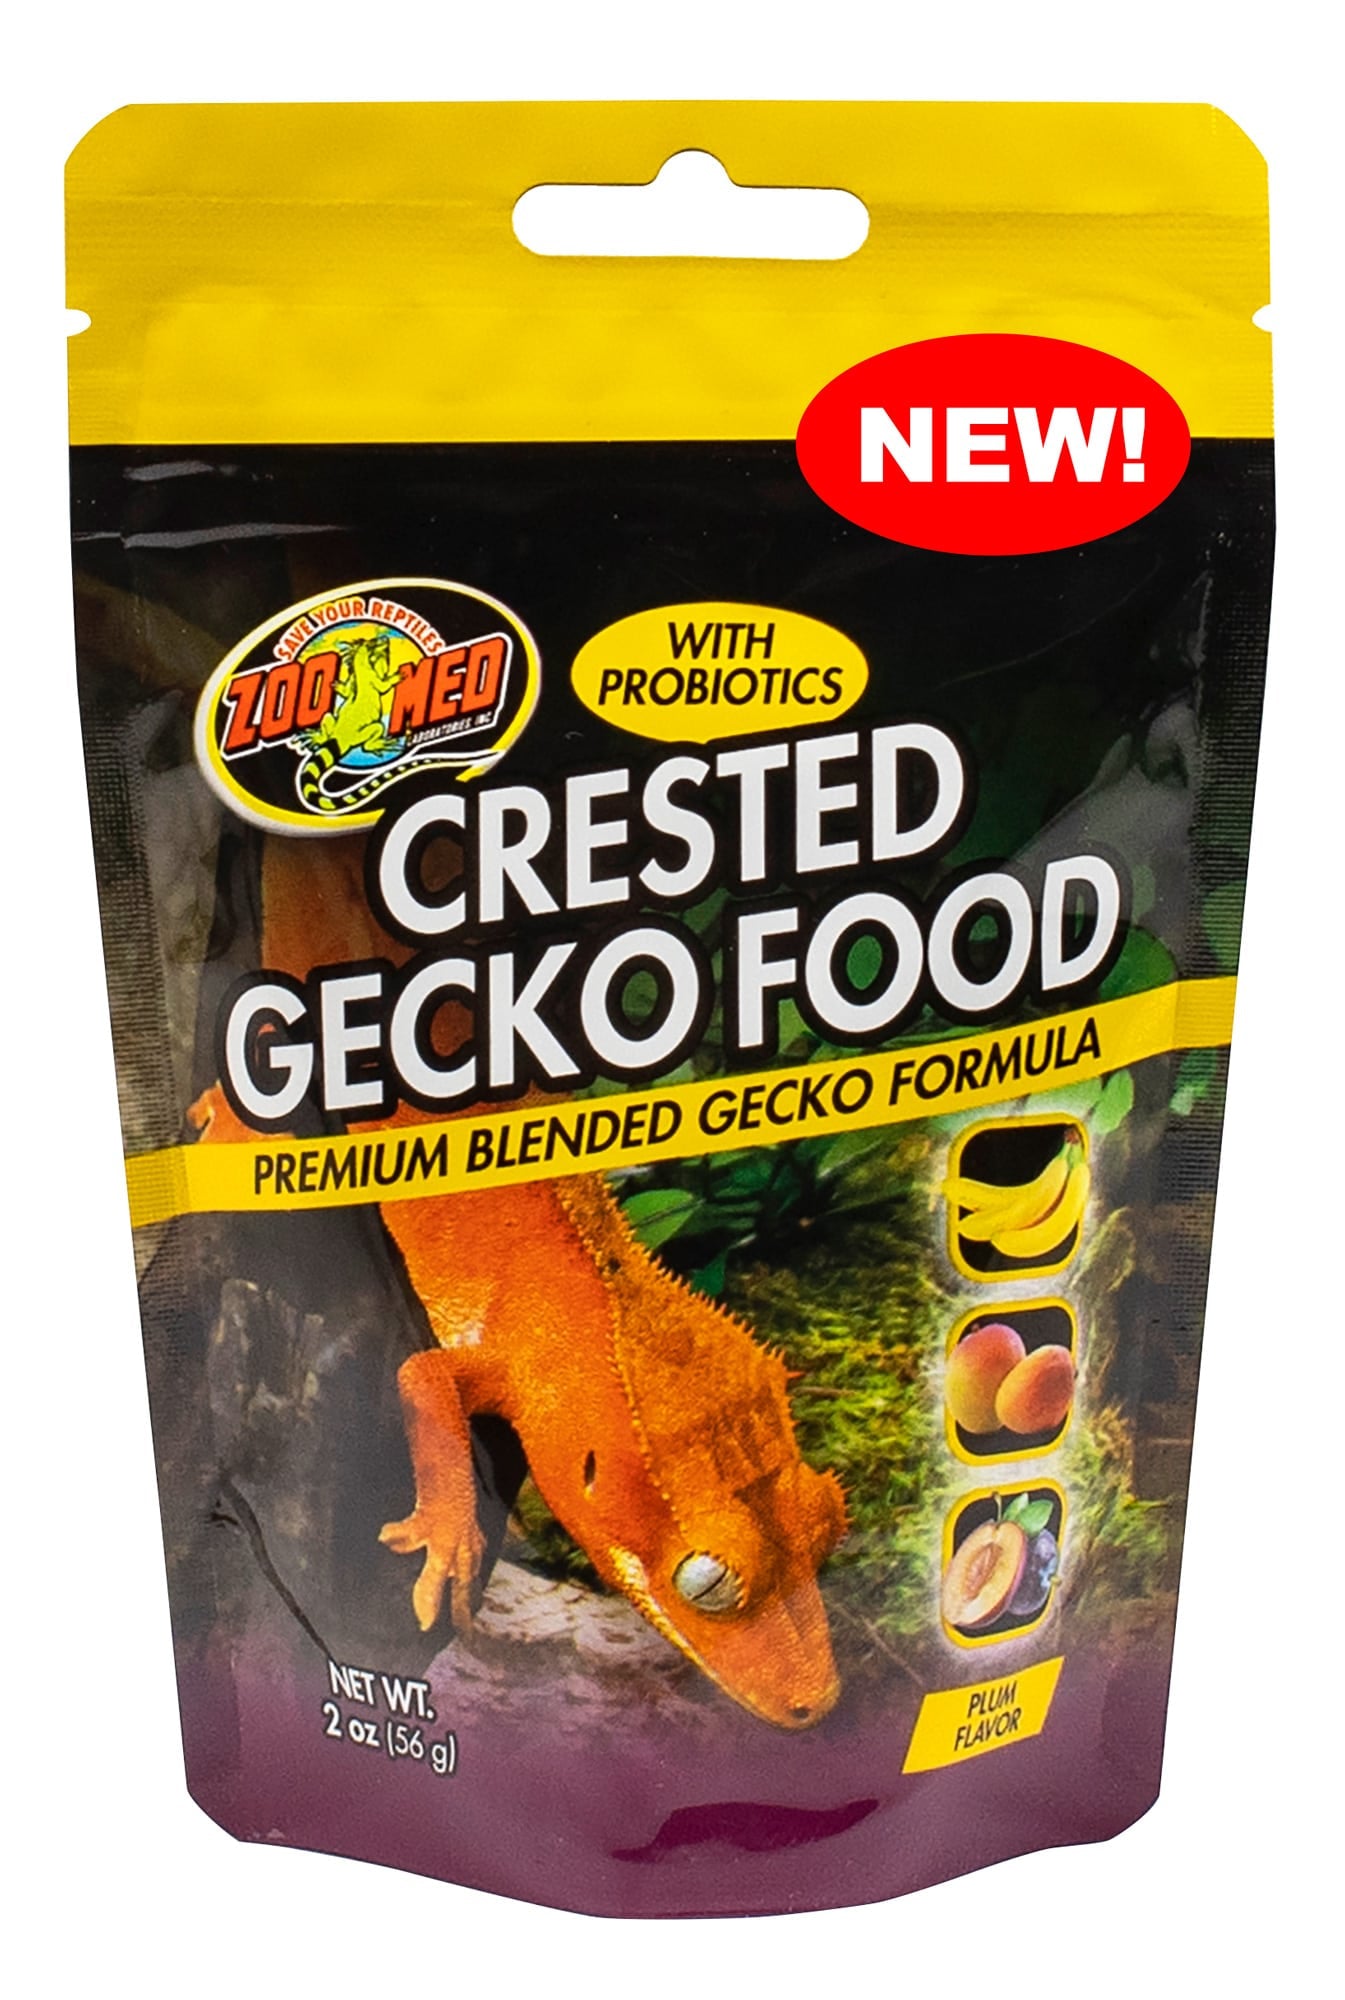 Zoo Med Crested Gecko Food with Probiotics Premium Blended Gecko Formula Plum Flavor